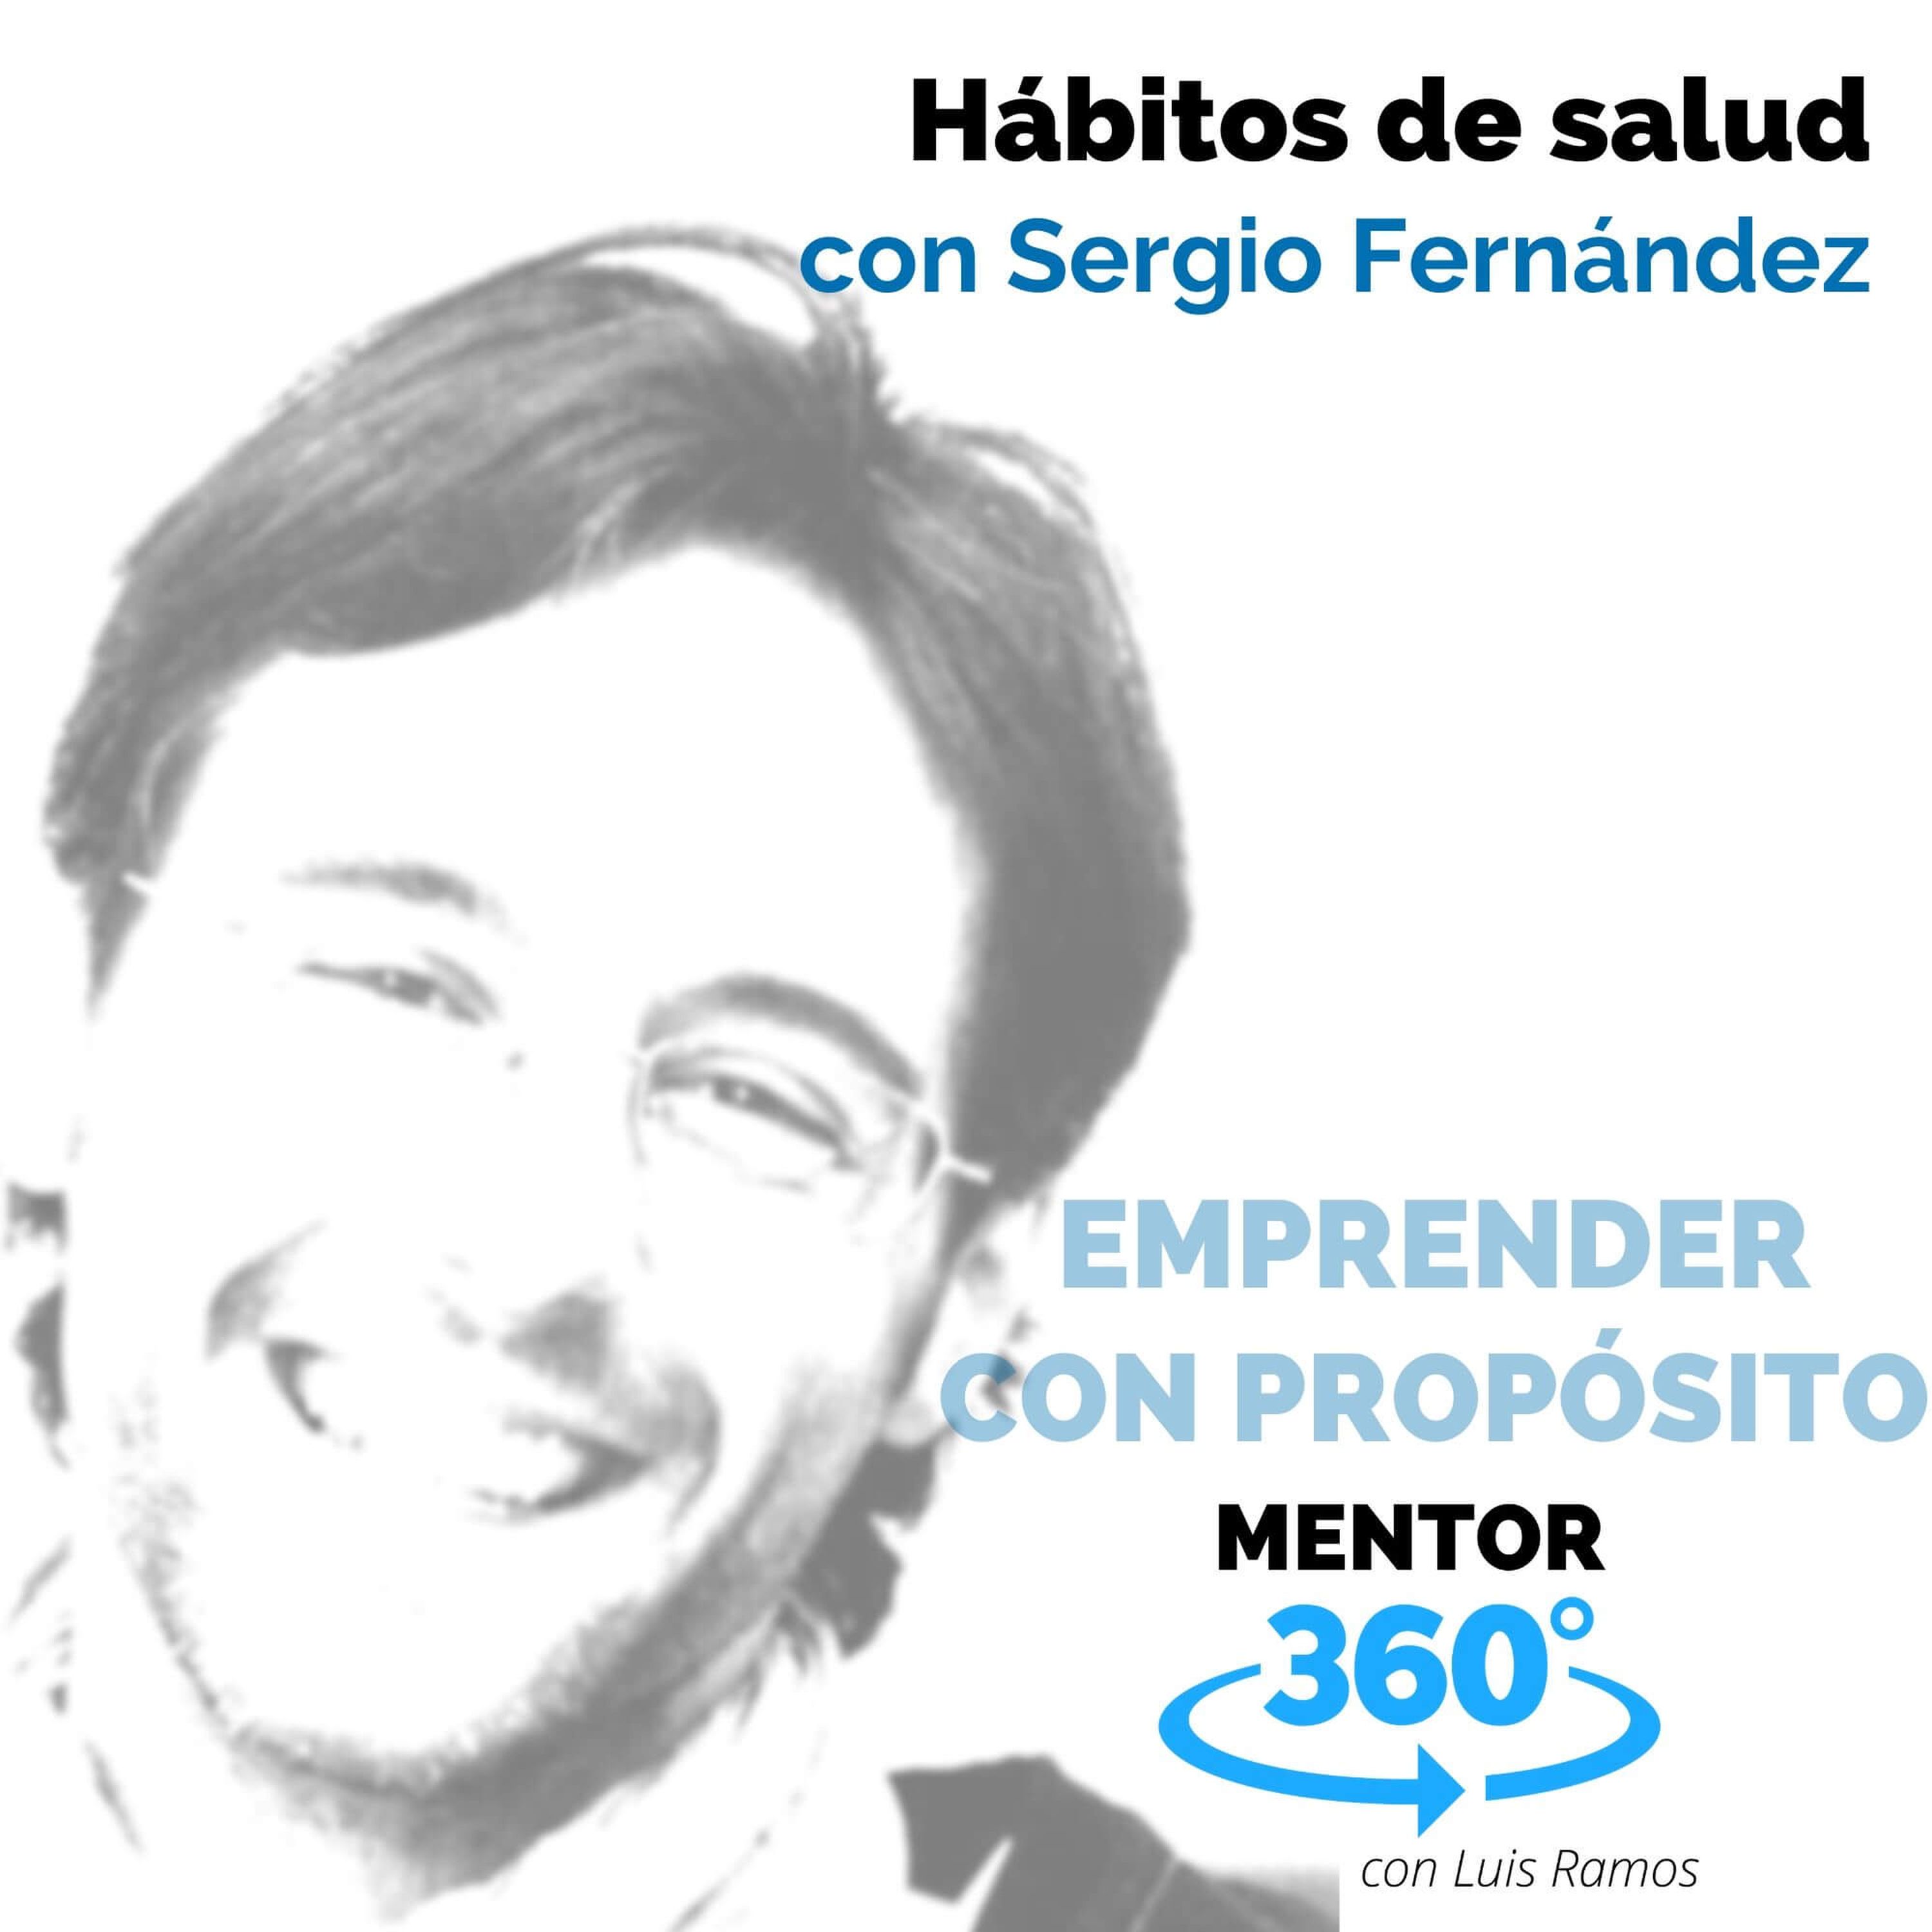 Hábitos de salud, con Sergio Fernández - EMPRENDER CON PROPÓSITO - MENTOR360